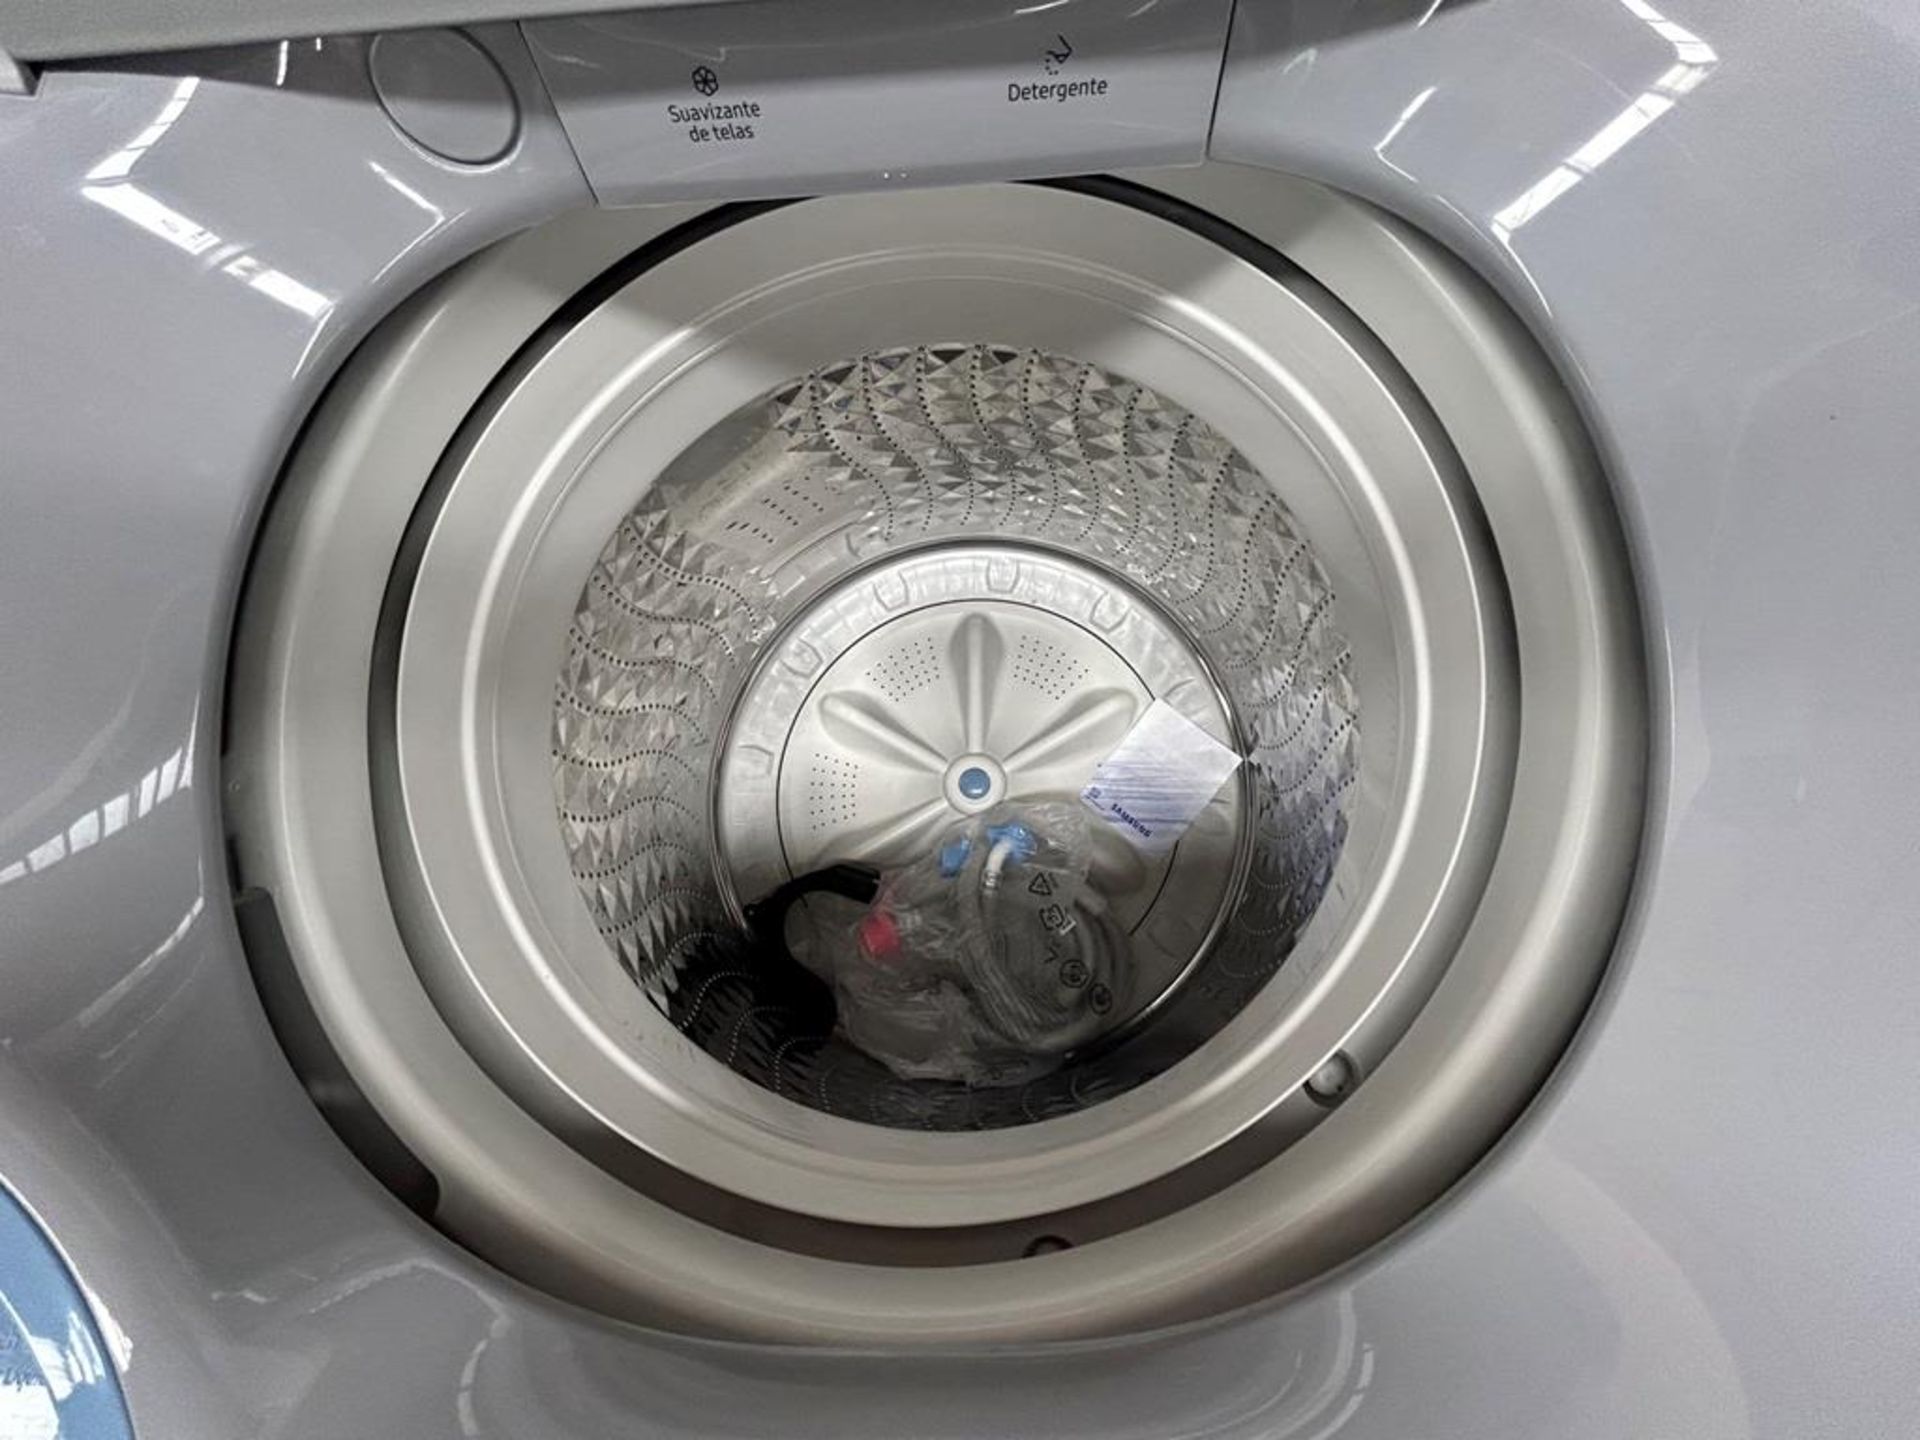 Lote de 2 lavadoras contiene: 1 Lavadora de 20 KG Marca SAMSUNG, Modelo WA20A3350GW, Serie 0027IF, - Image 5 of 6